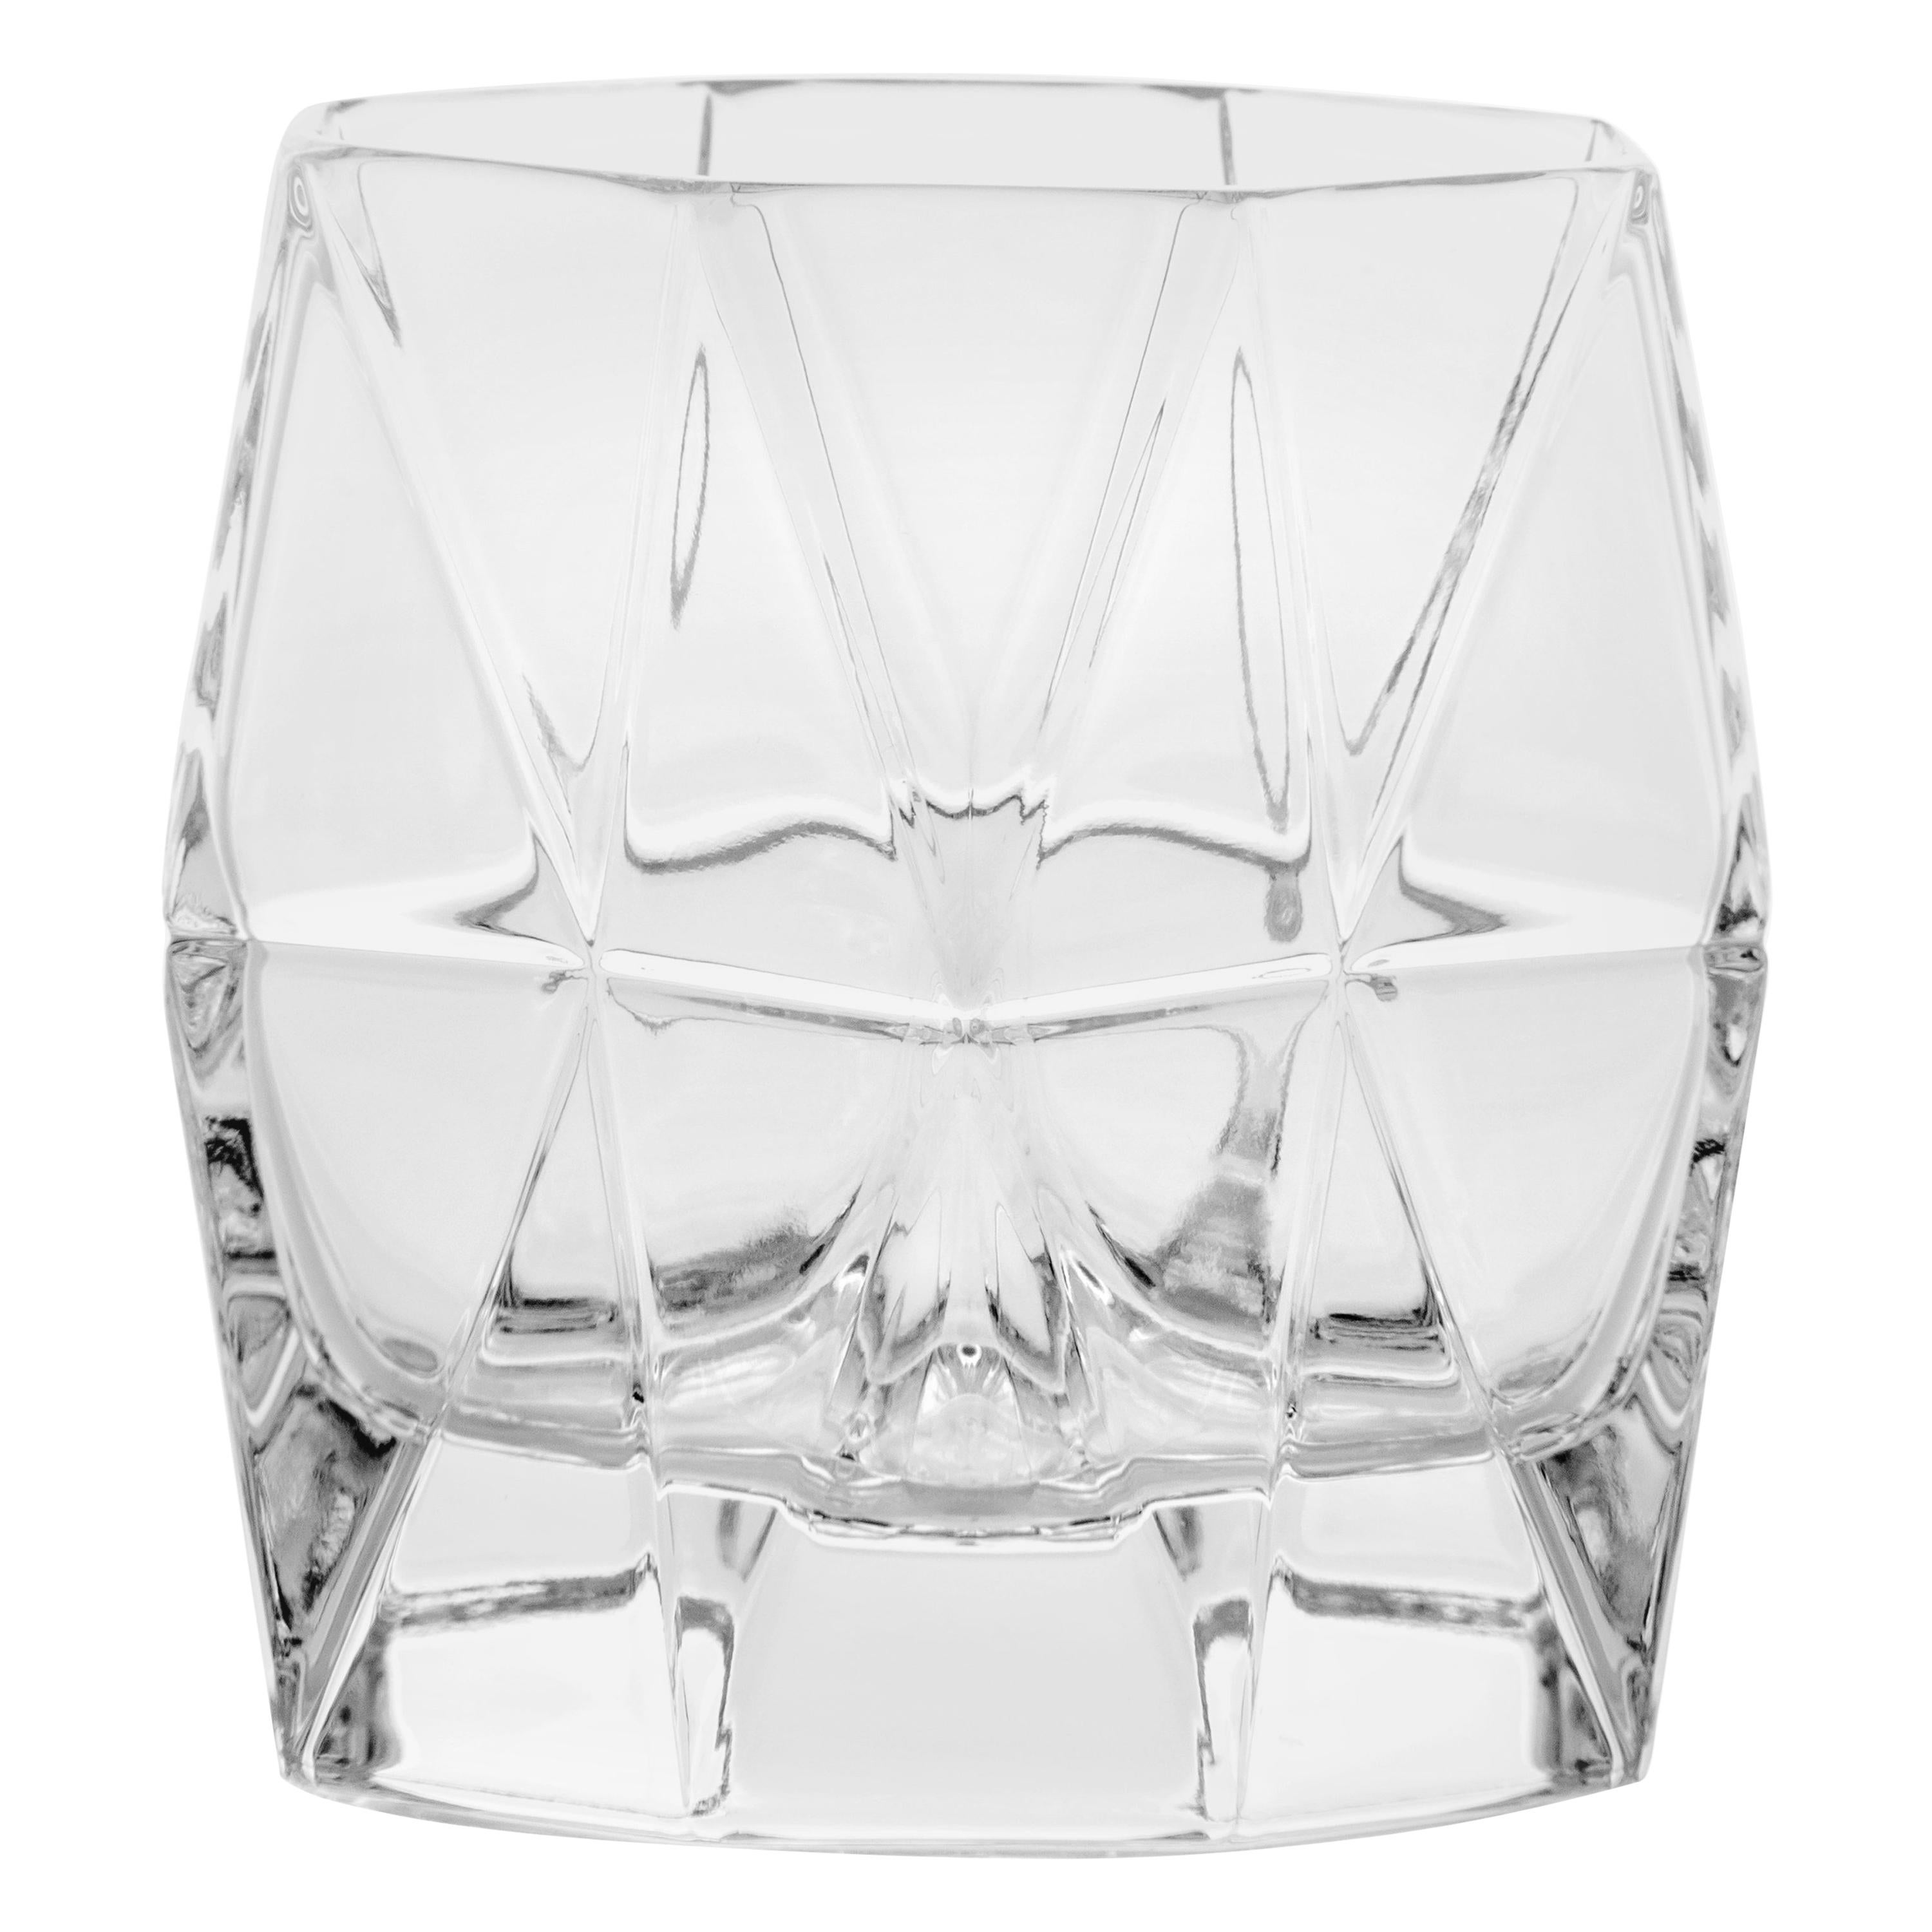 21st Century Karim Rashid Handmade Crystal Transparent Glasses